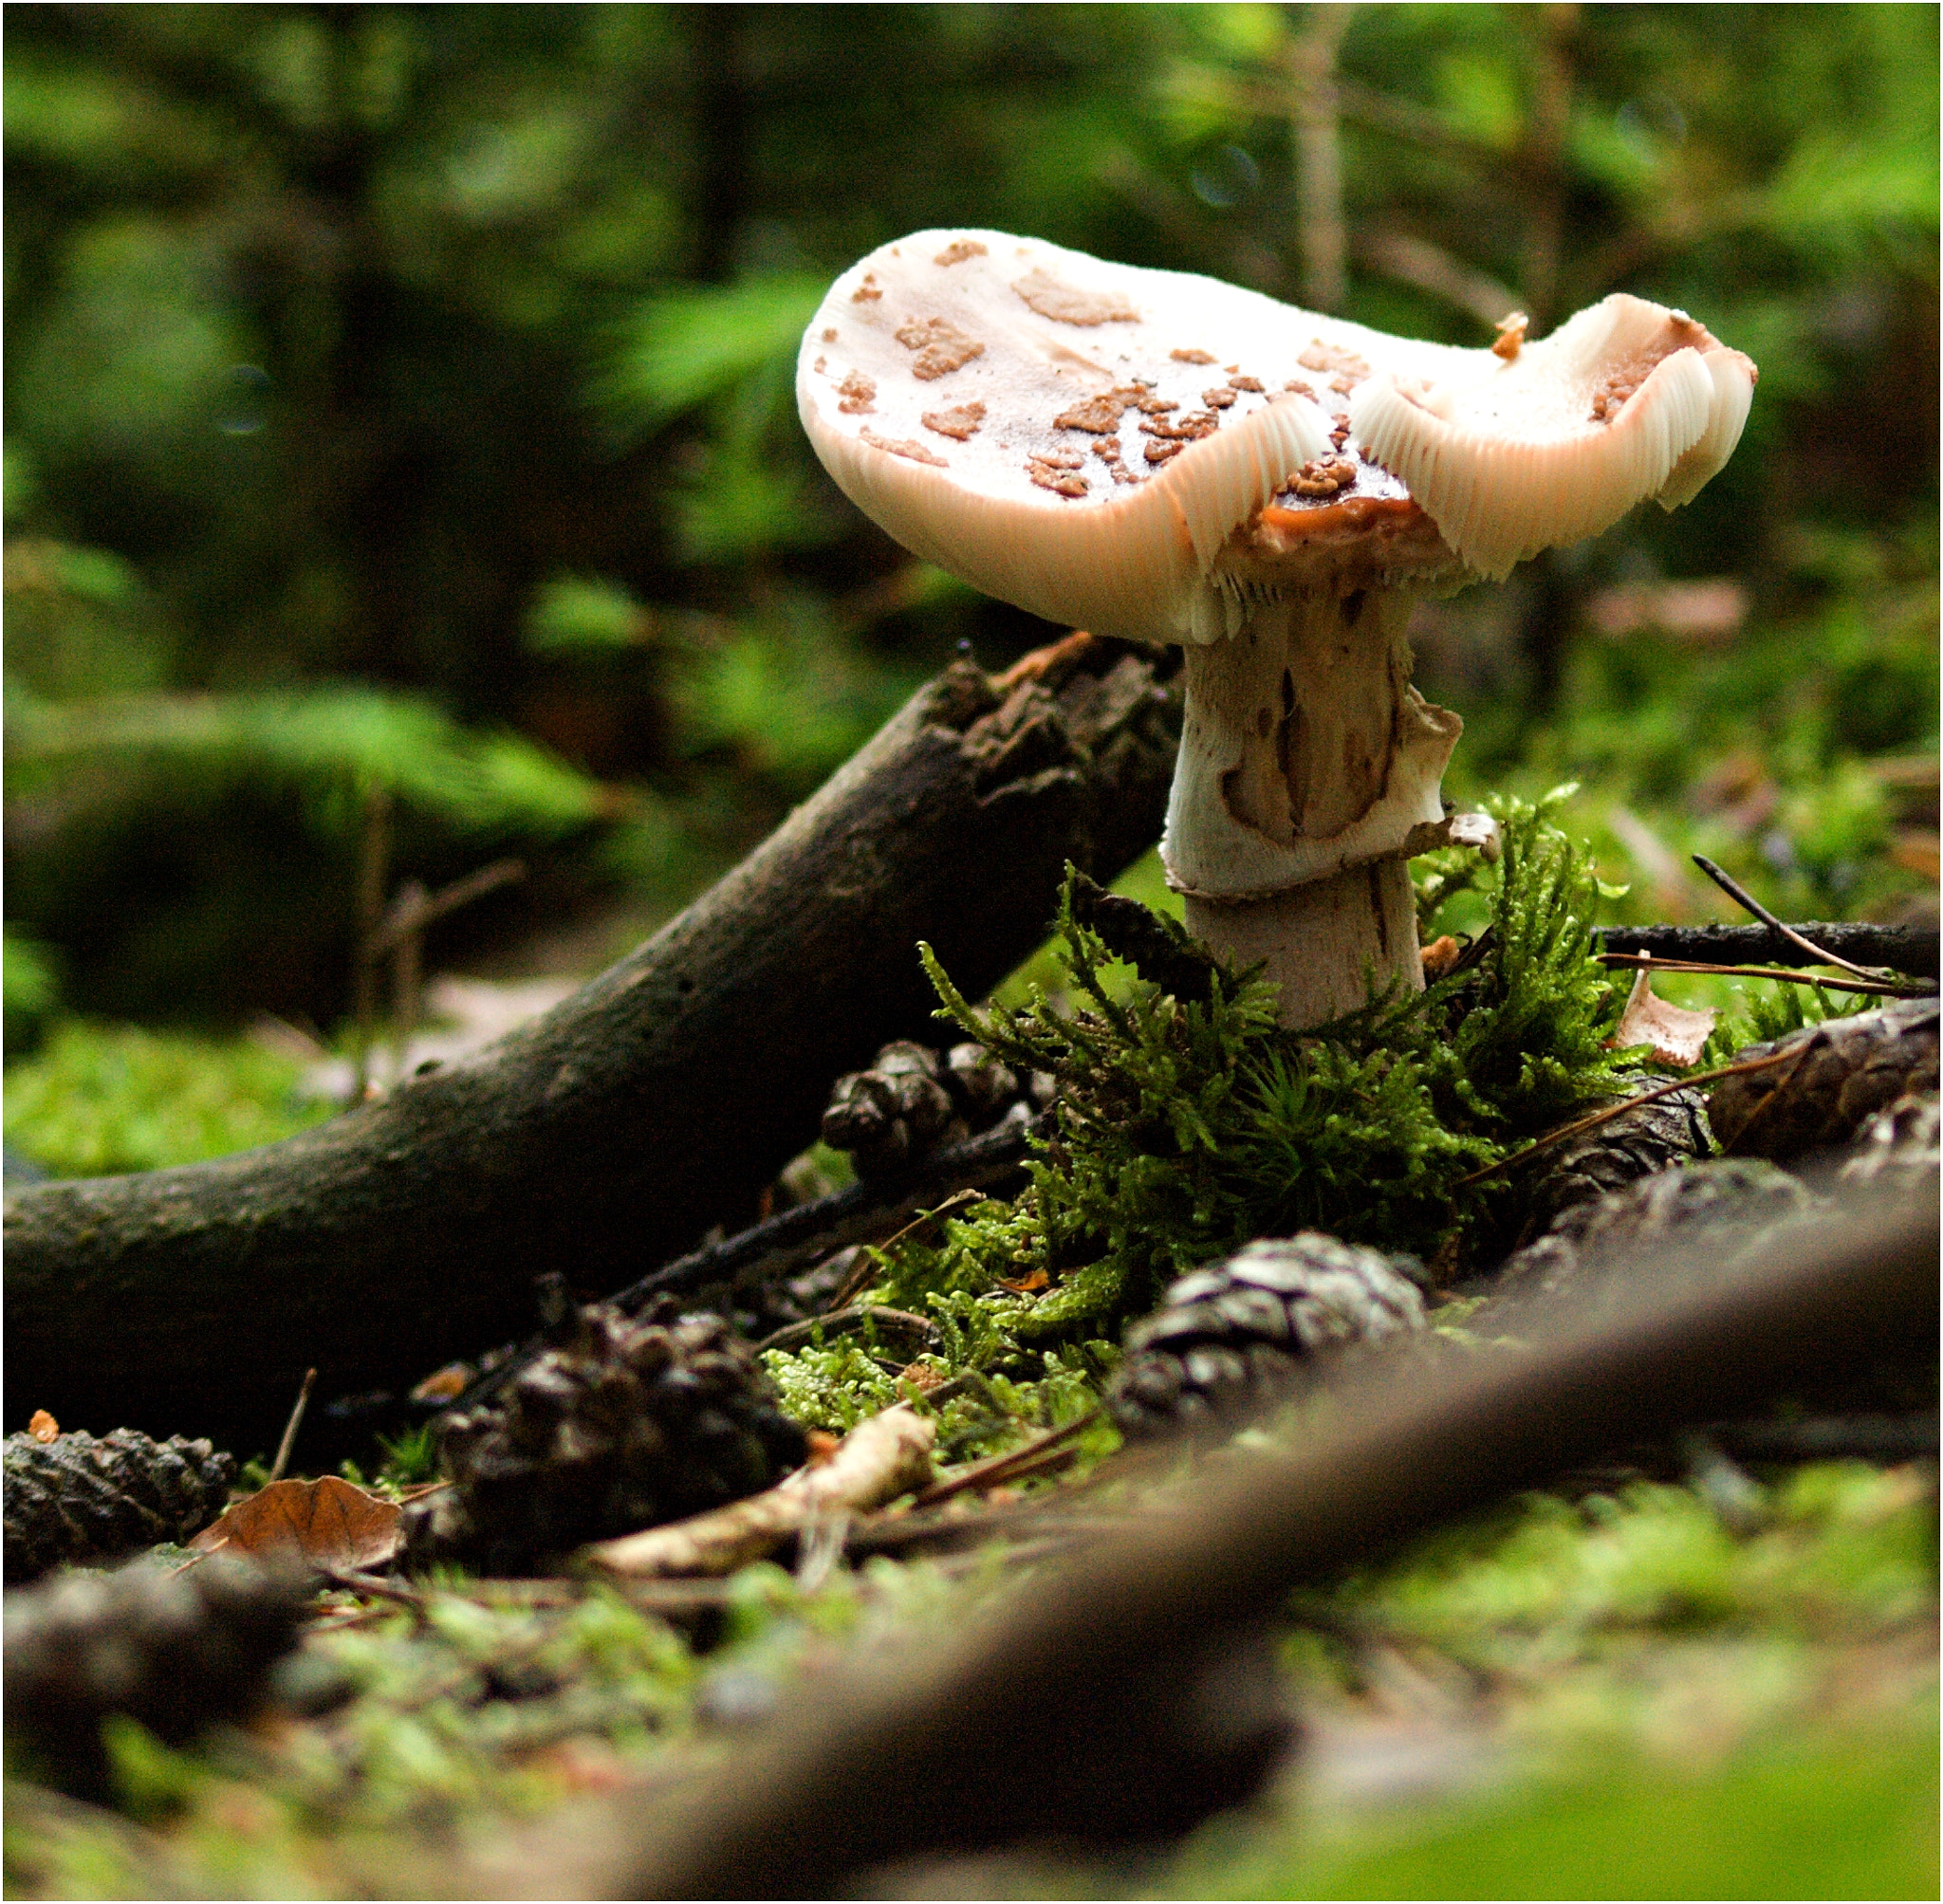 Olympus E-510 (EVOLT E-510) + 70.00 - 300.00 mm f/4.0 - 5.6 sample photo. The mushroom ii. photography